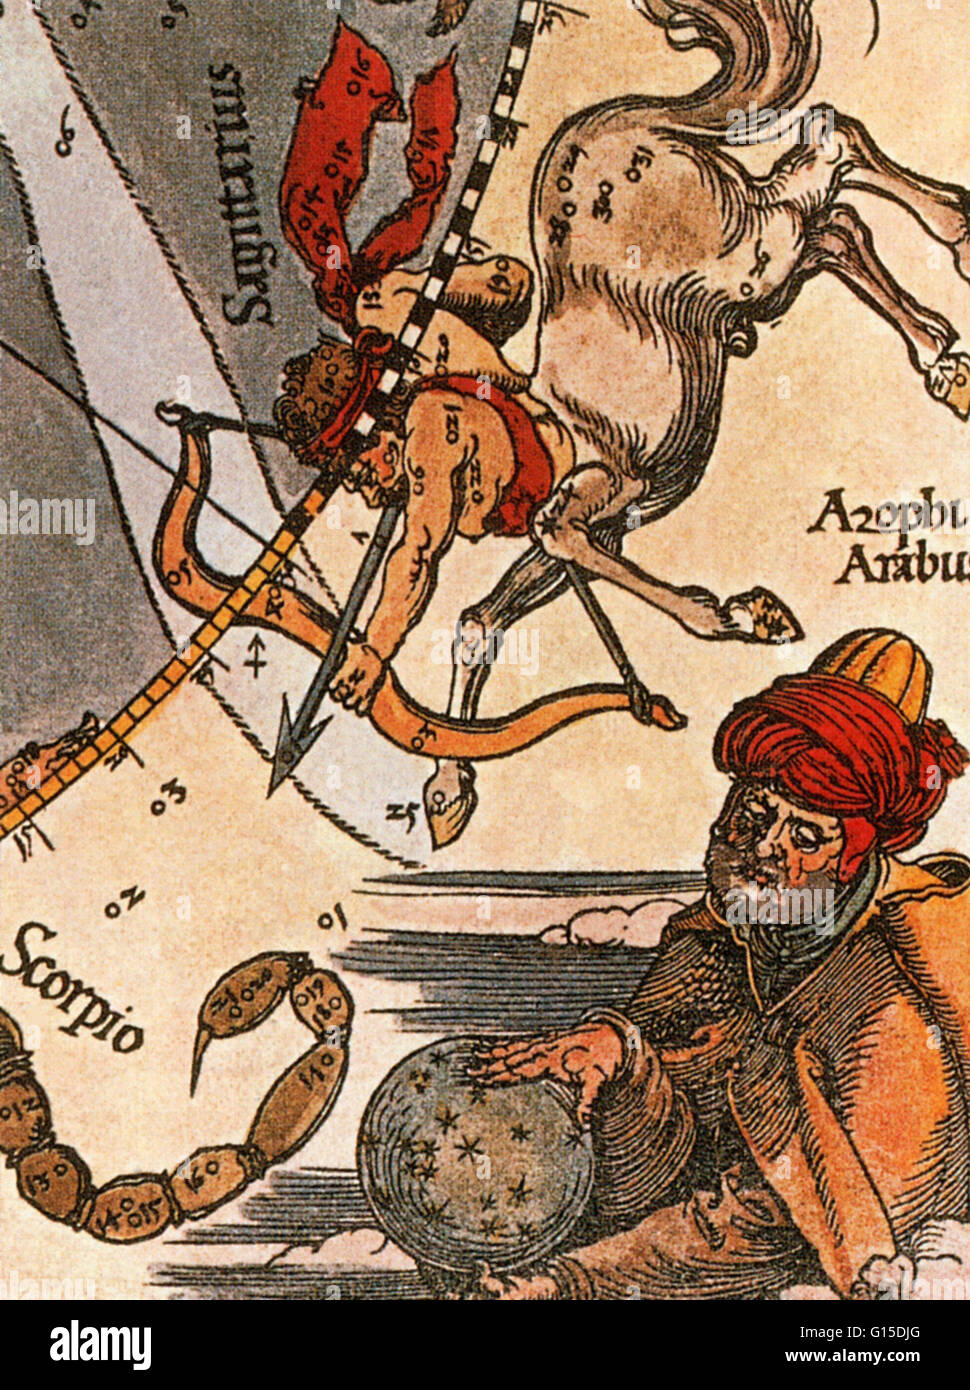 Al-Sufi, wie von Albrecht Dürer vorgestellt. Abd al-Rahman al-Sufi (7 Dezember 903-25 Mai 986), manchmal bekannt im Westen als Azophi, veröffentlicht das berühmte "Buch der Fixsterne" in 964, beschreibt viel von seiner Arbeit, sowohl im schriftlichen Beschreibungen und Bilder Stockfoto